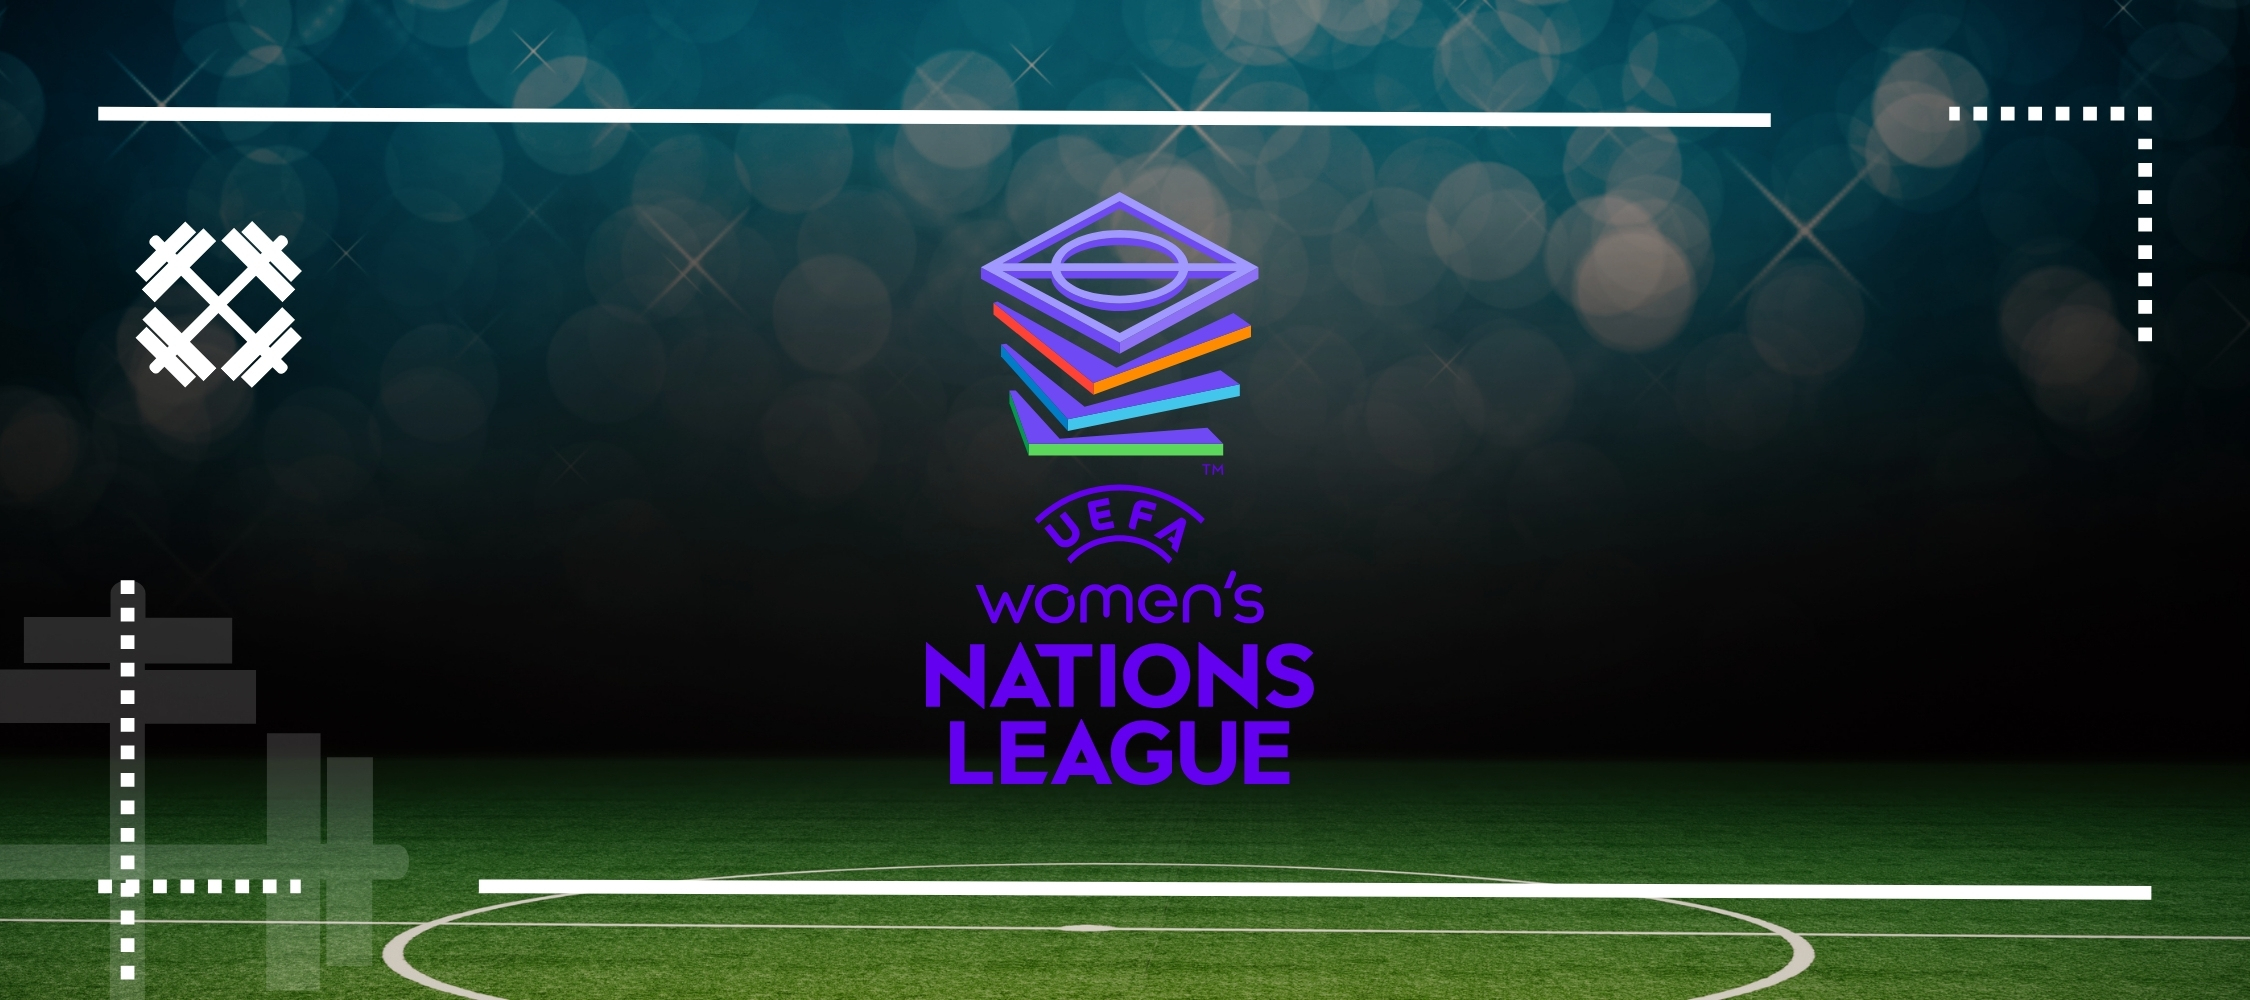 Uefa Women’s Nations League Explained
